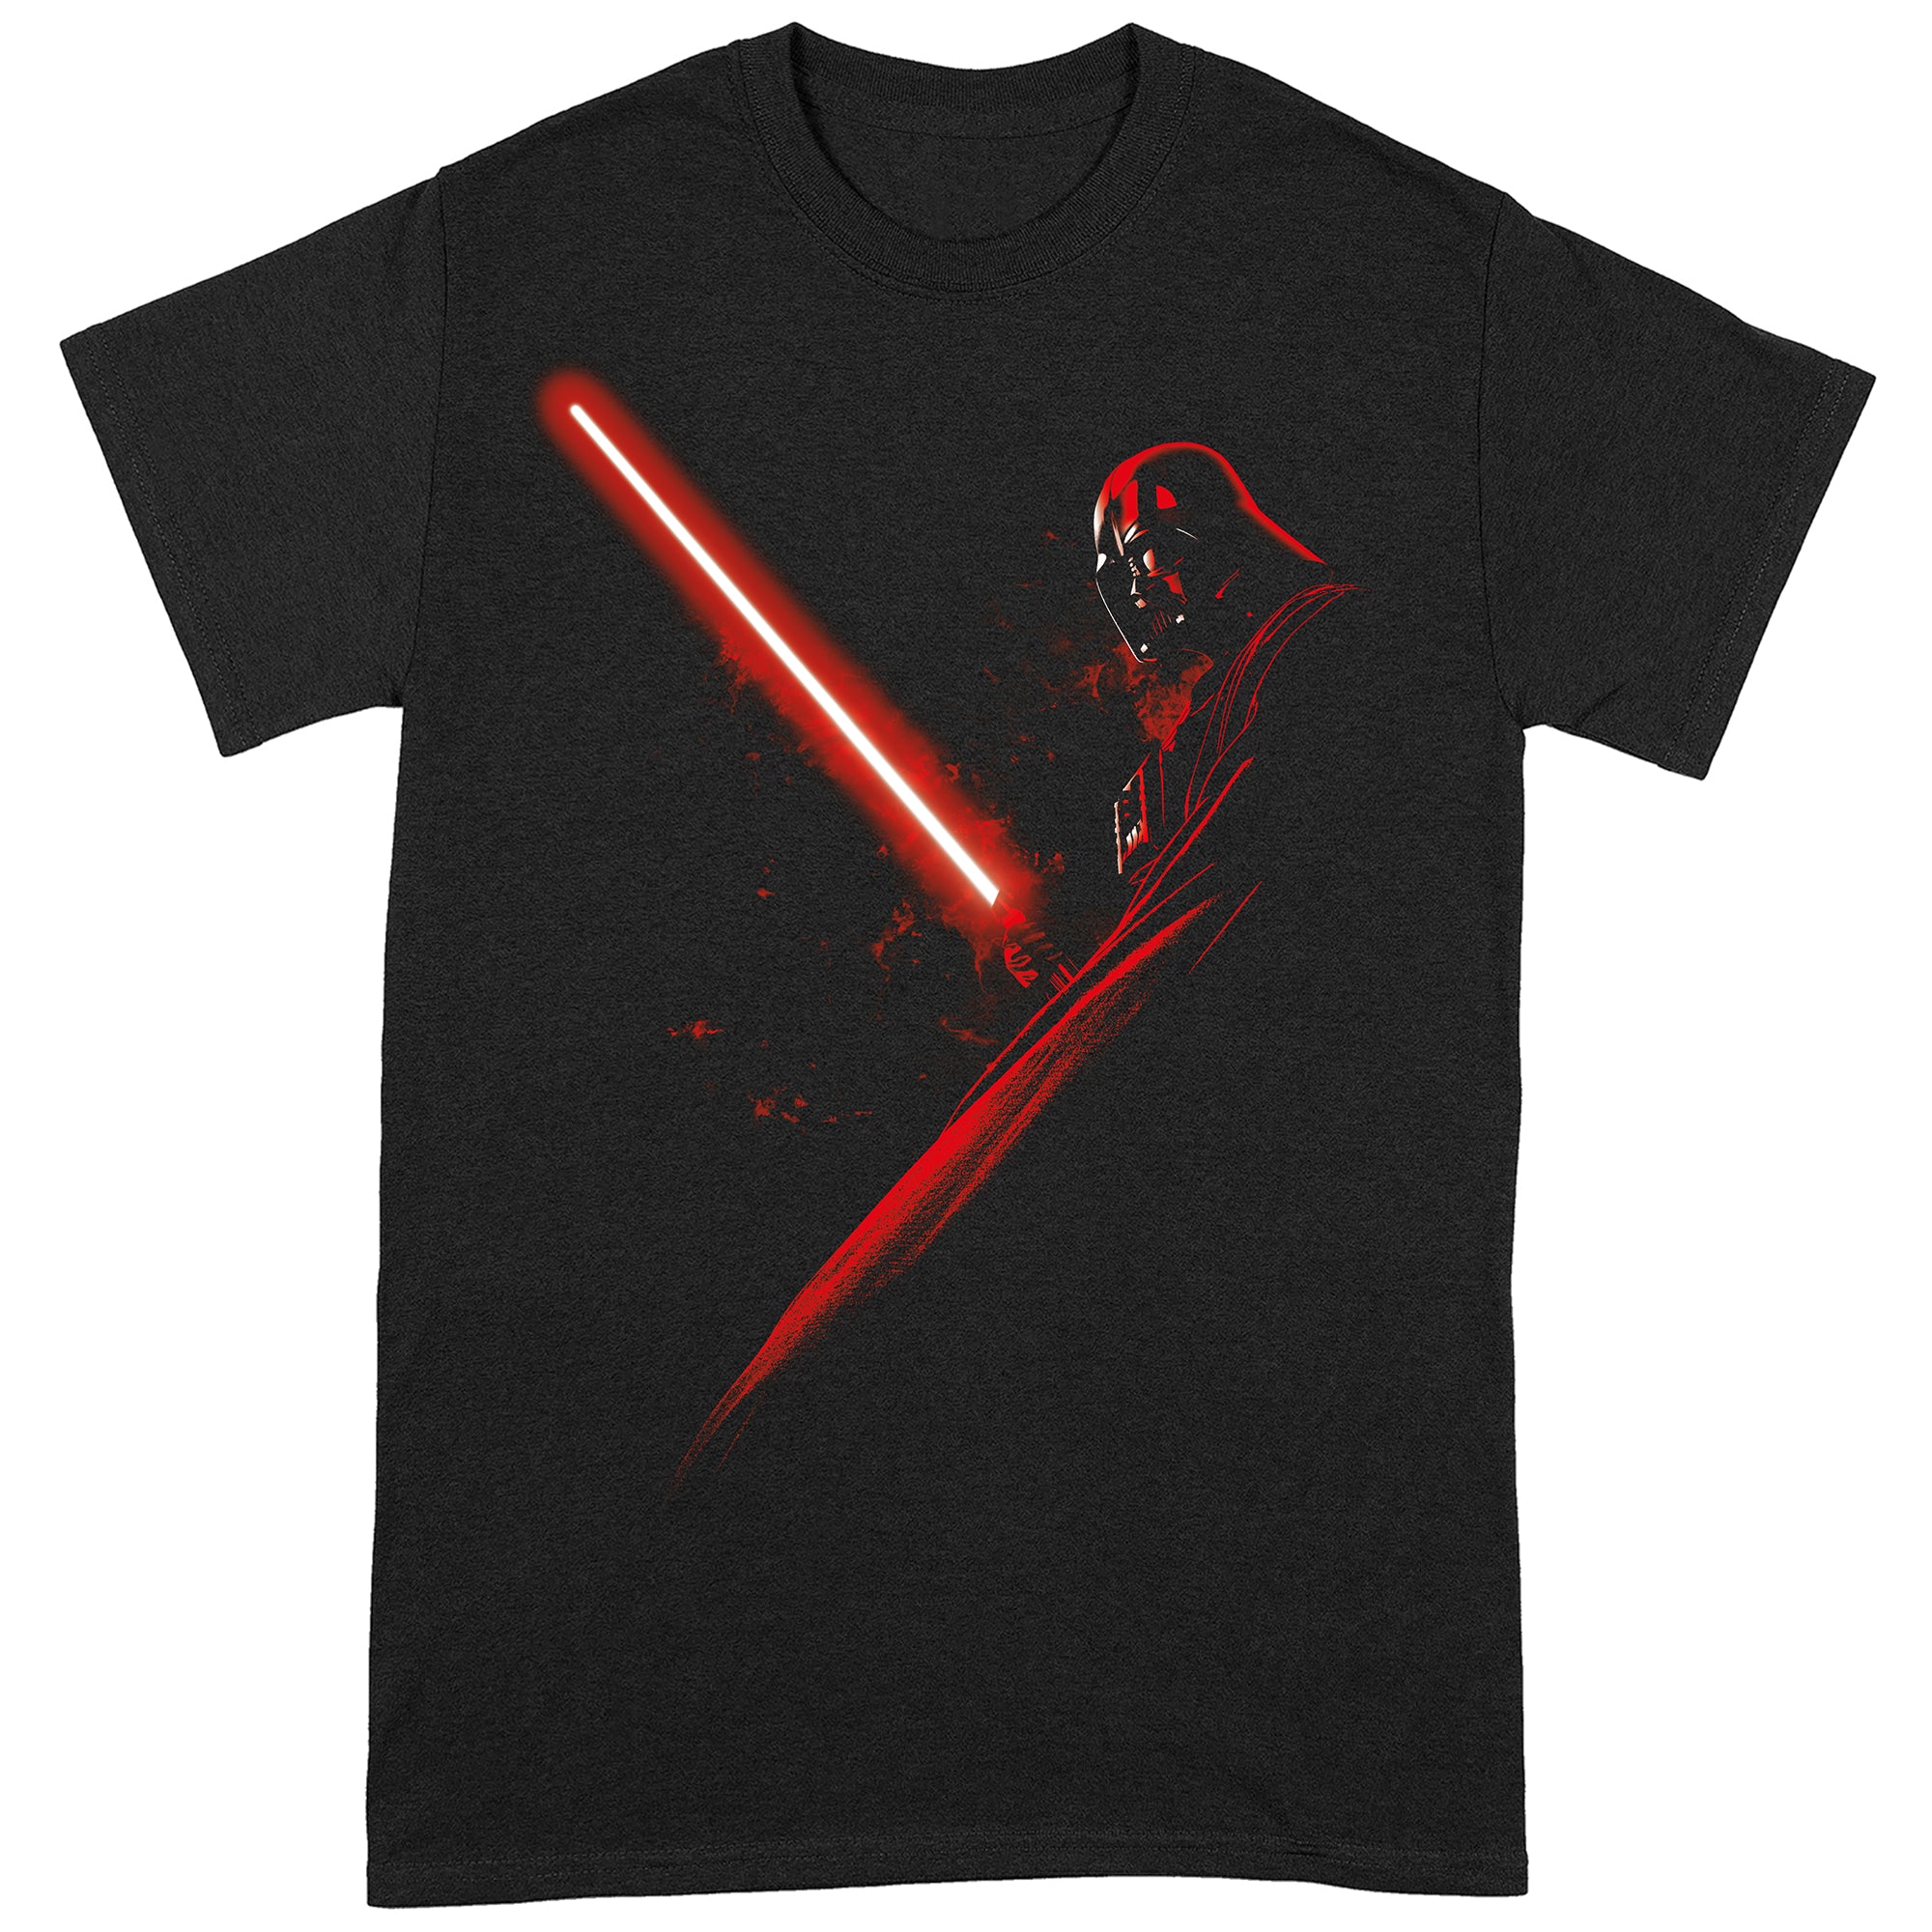 Star Wars Darth Vader Lightsaber T-Shirt